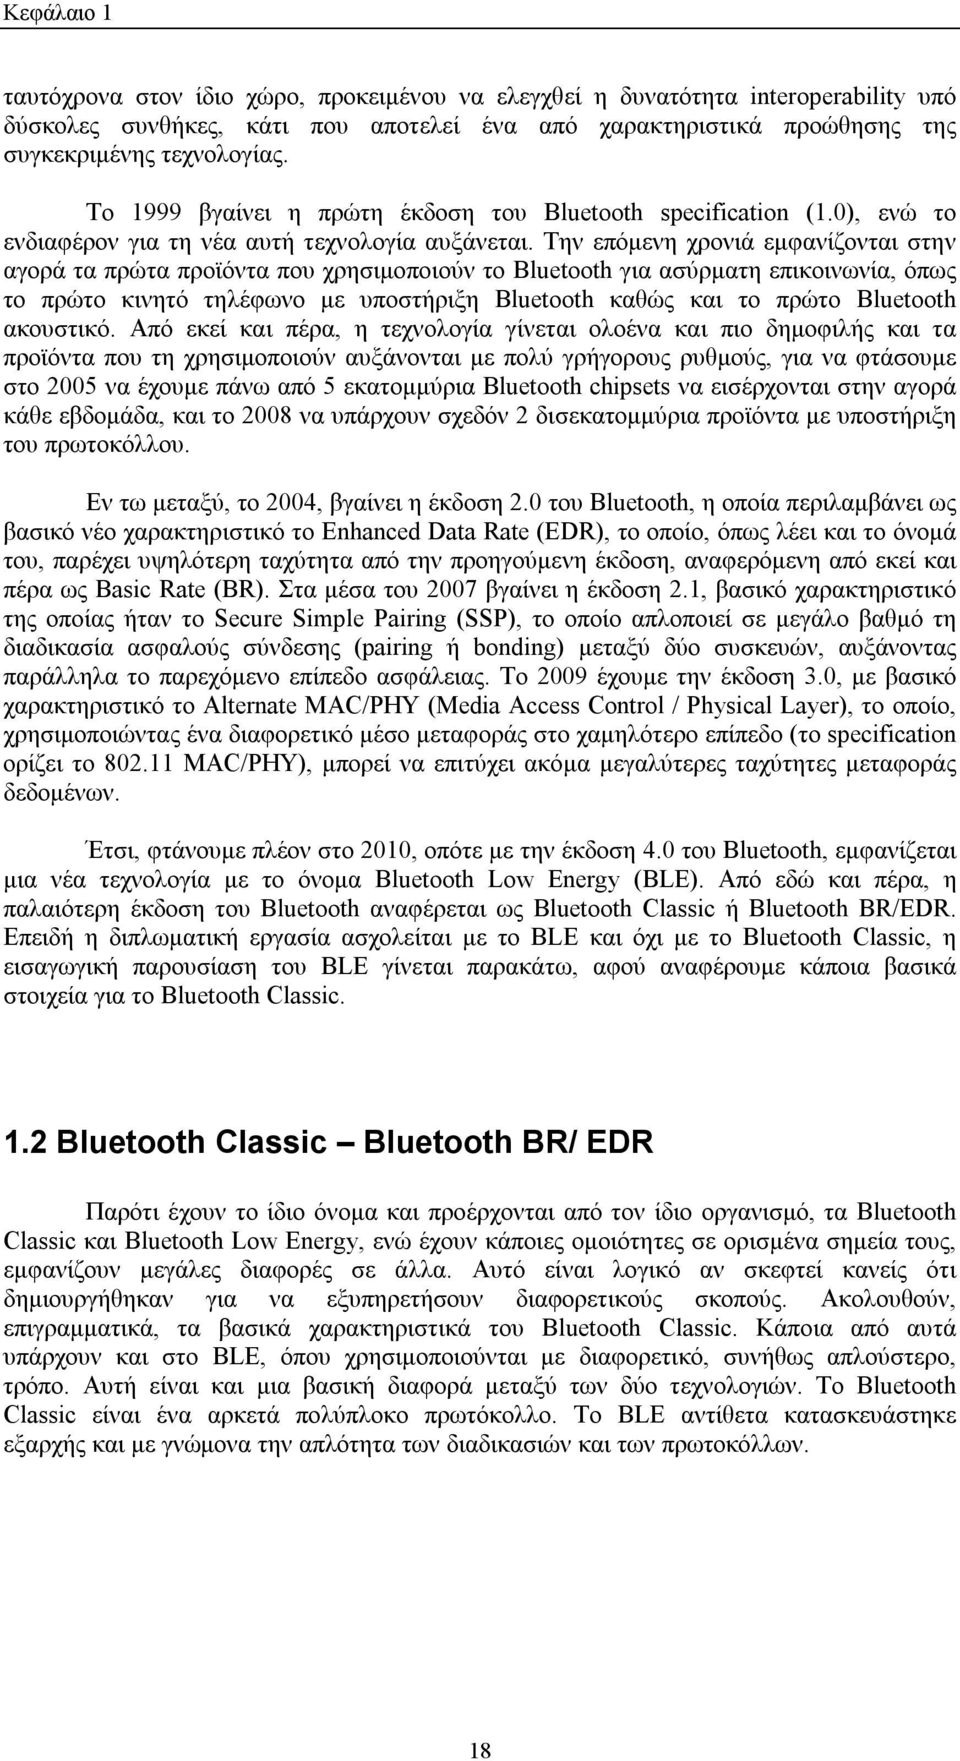 Την επόμενη χρονιά εμφανίζονται στην αγορά τα πρώτα προϊόντα που χρησιμοποιούν το Bluetooth για ασύρματη επικοινωνία, όπως το πρώτο κινητό τηλέφωνο με υποστήριξη Bluetooth καθώς και το πρώτο